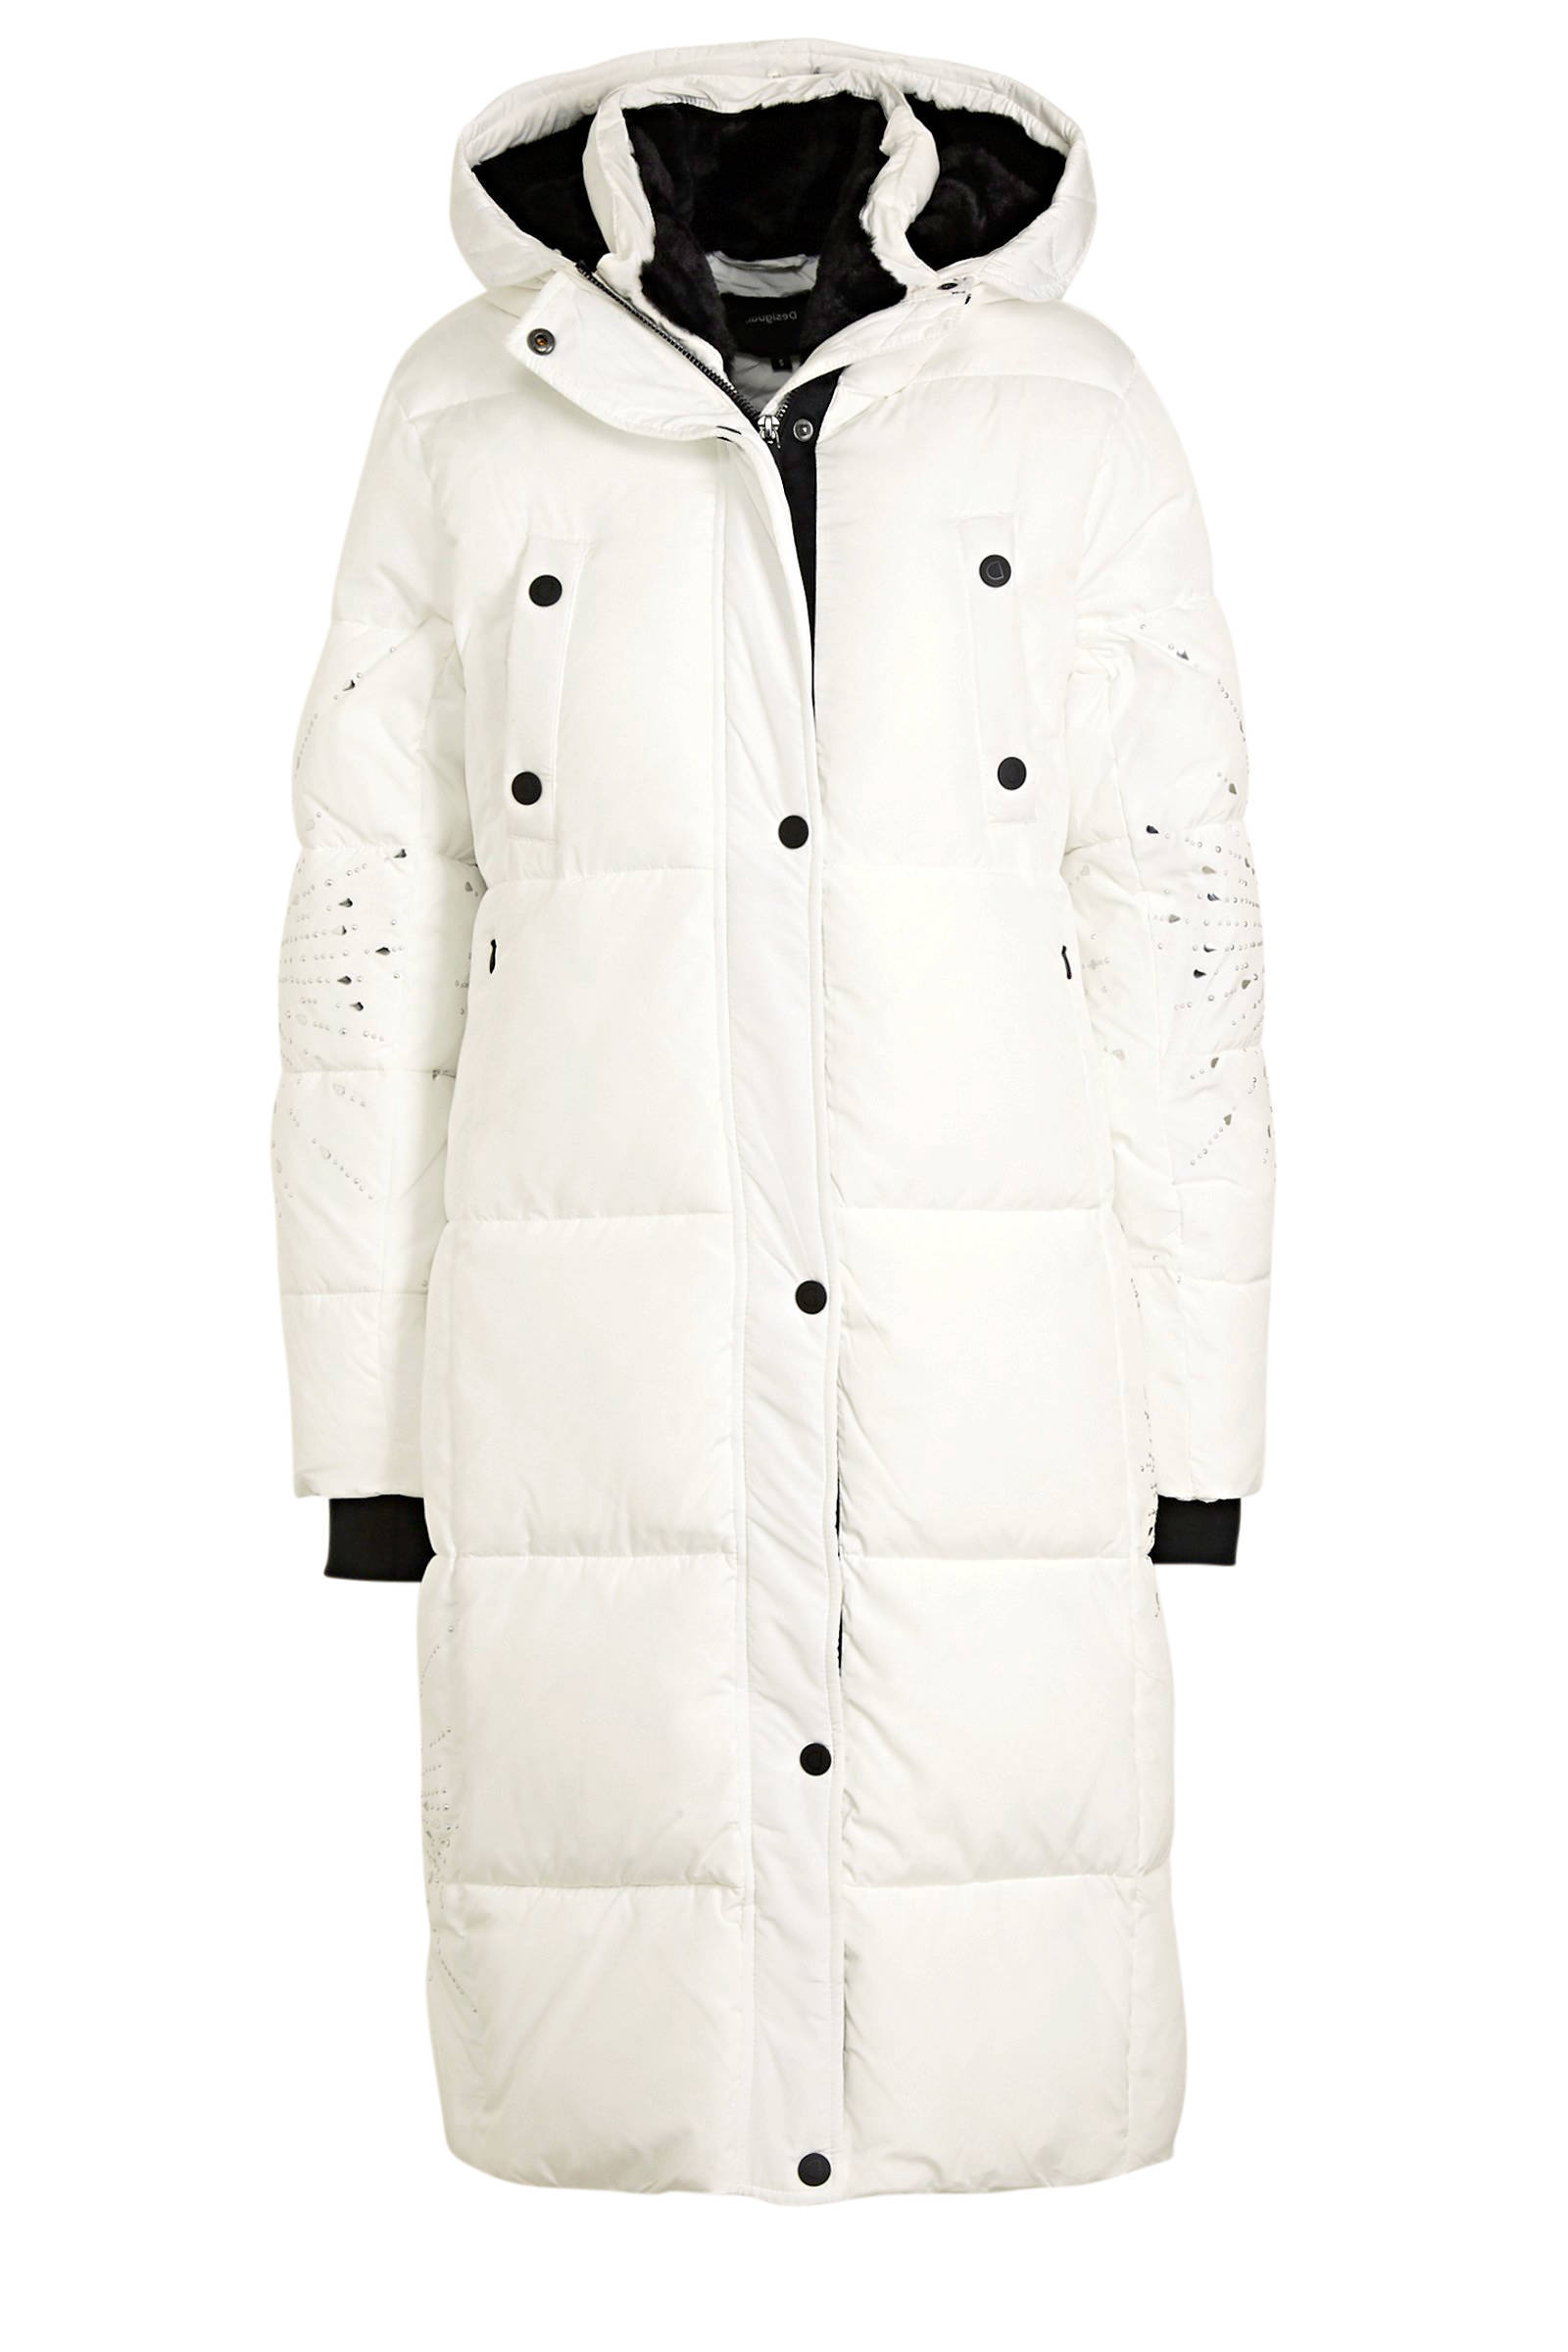 Desigual gewatteerde jas met strass steentjes wit/zilver/zwart online kopen